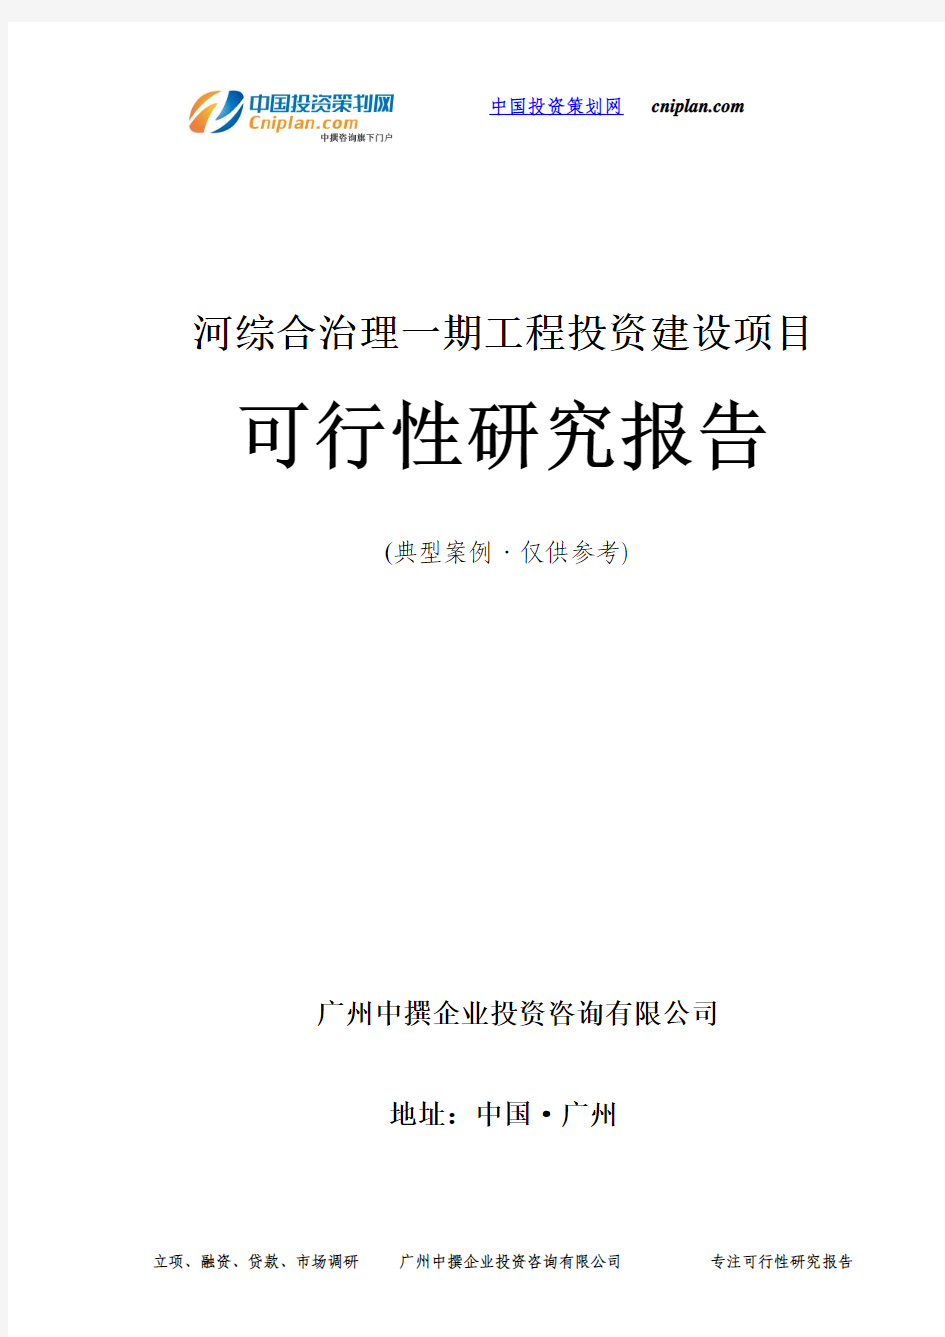 河综合治理一期工程投资建设项目可行性研究报告-广州中撰咨询